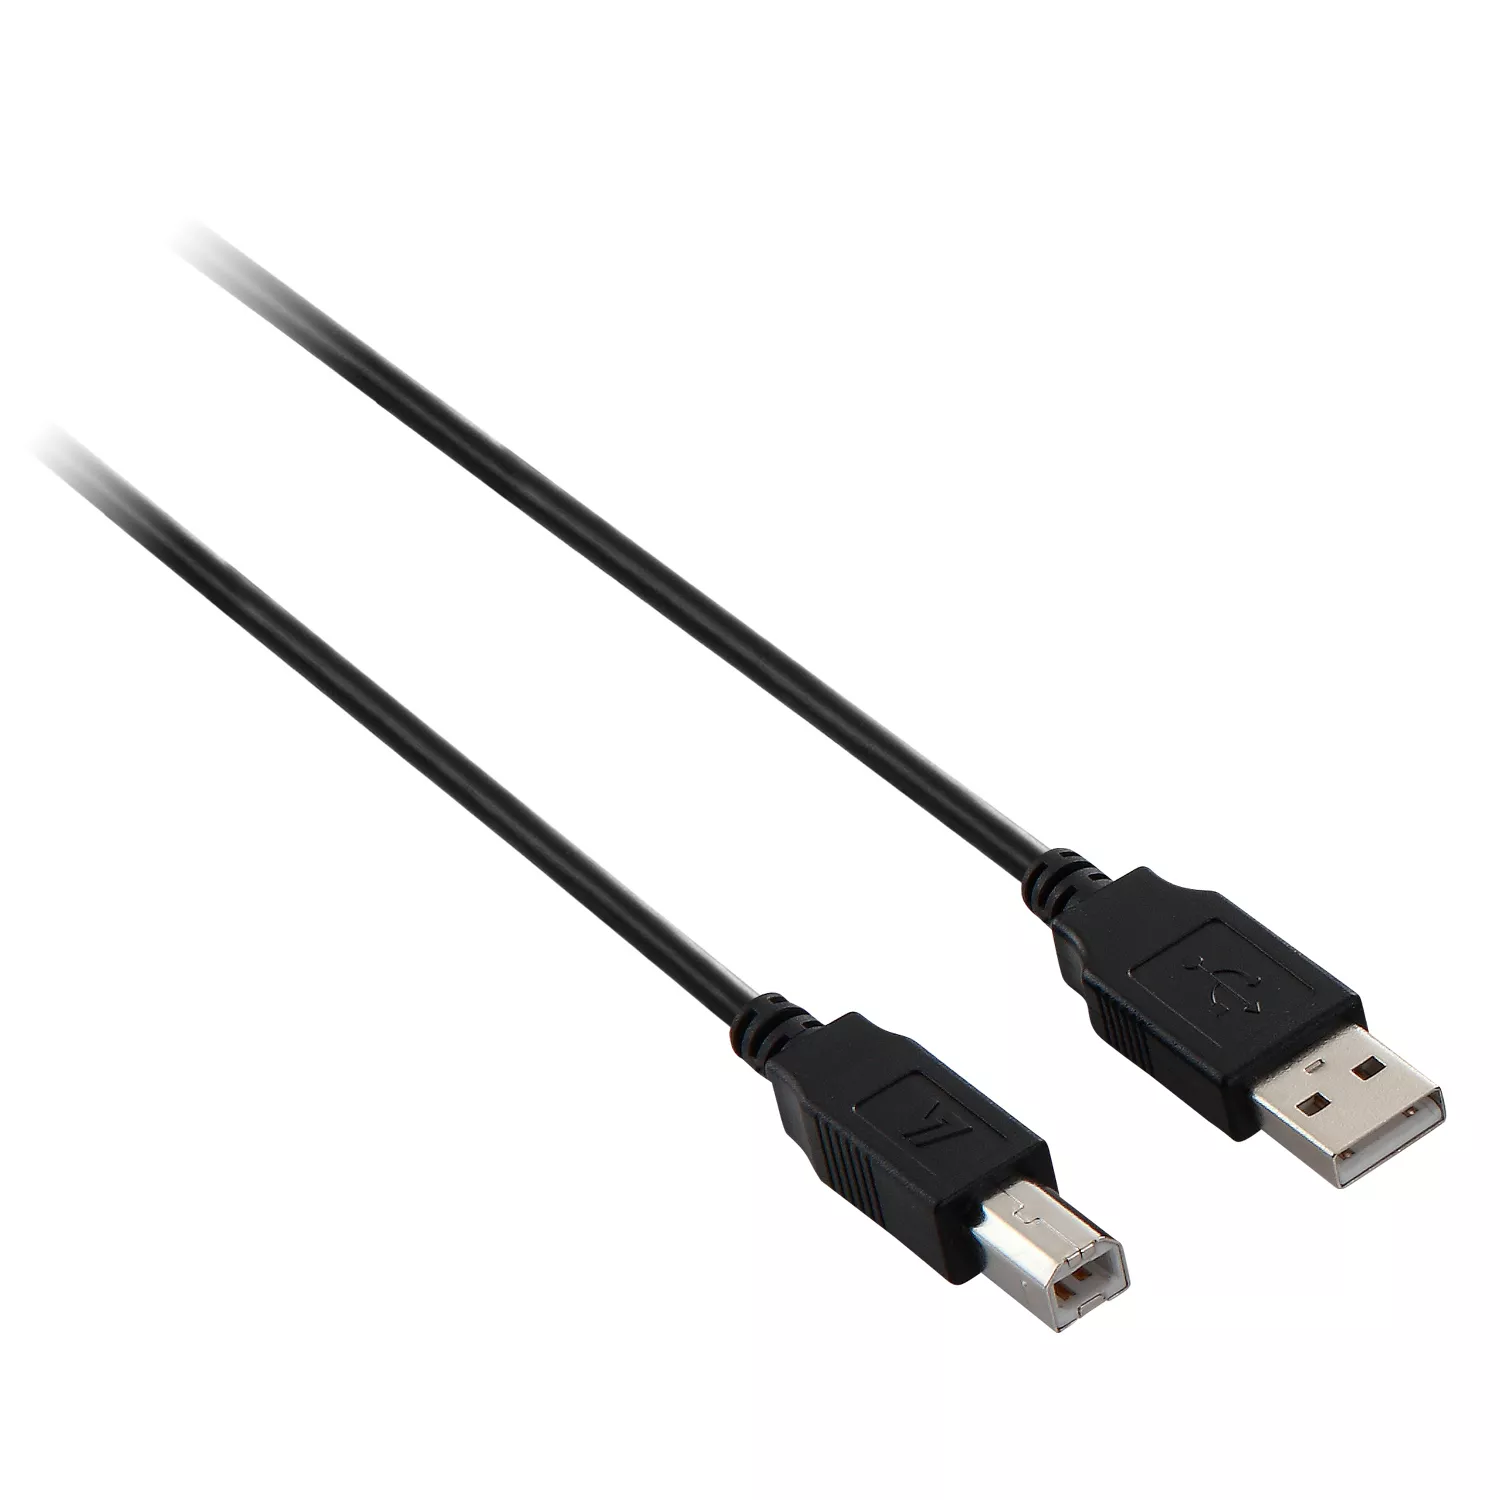 Achat V7 Câble USB 2.0 A mâle vers USB 2.0 B mâle, noir 2m 6.6ft au meilleur prix